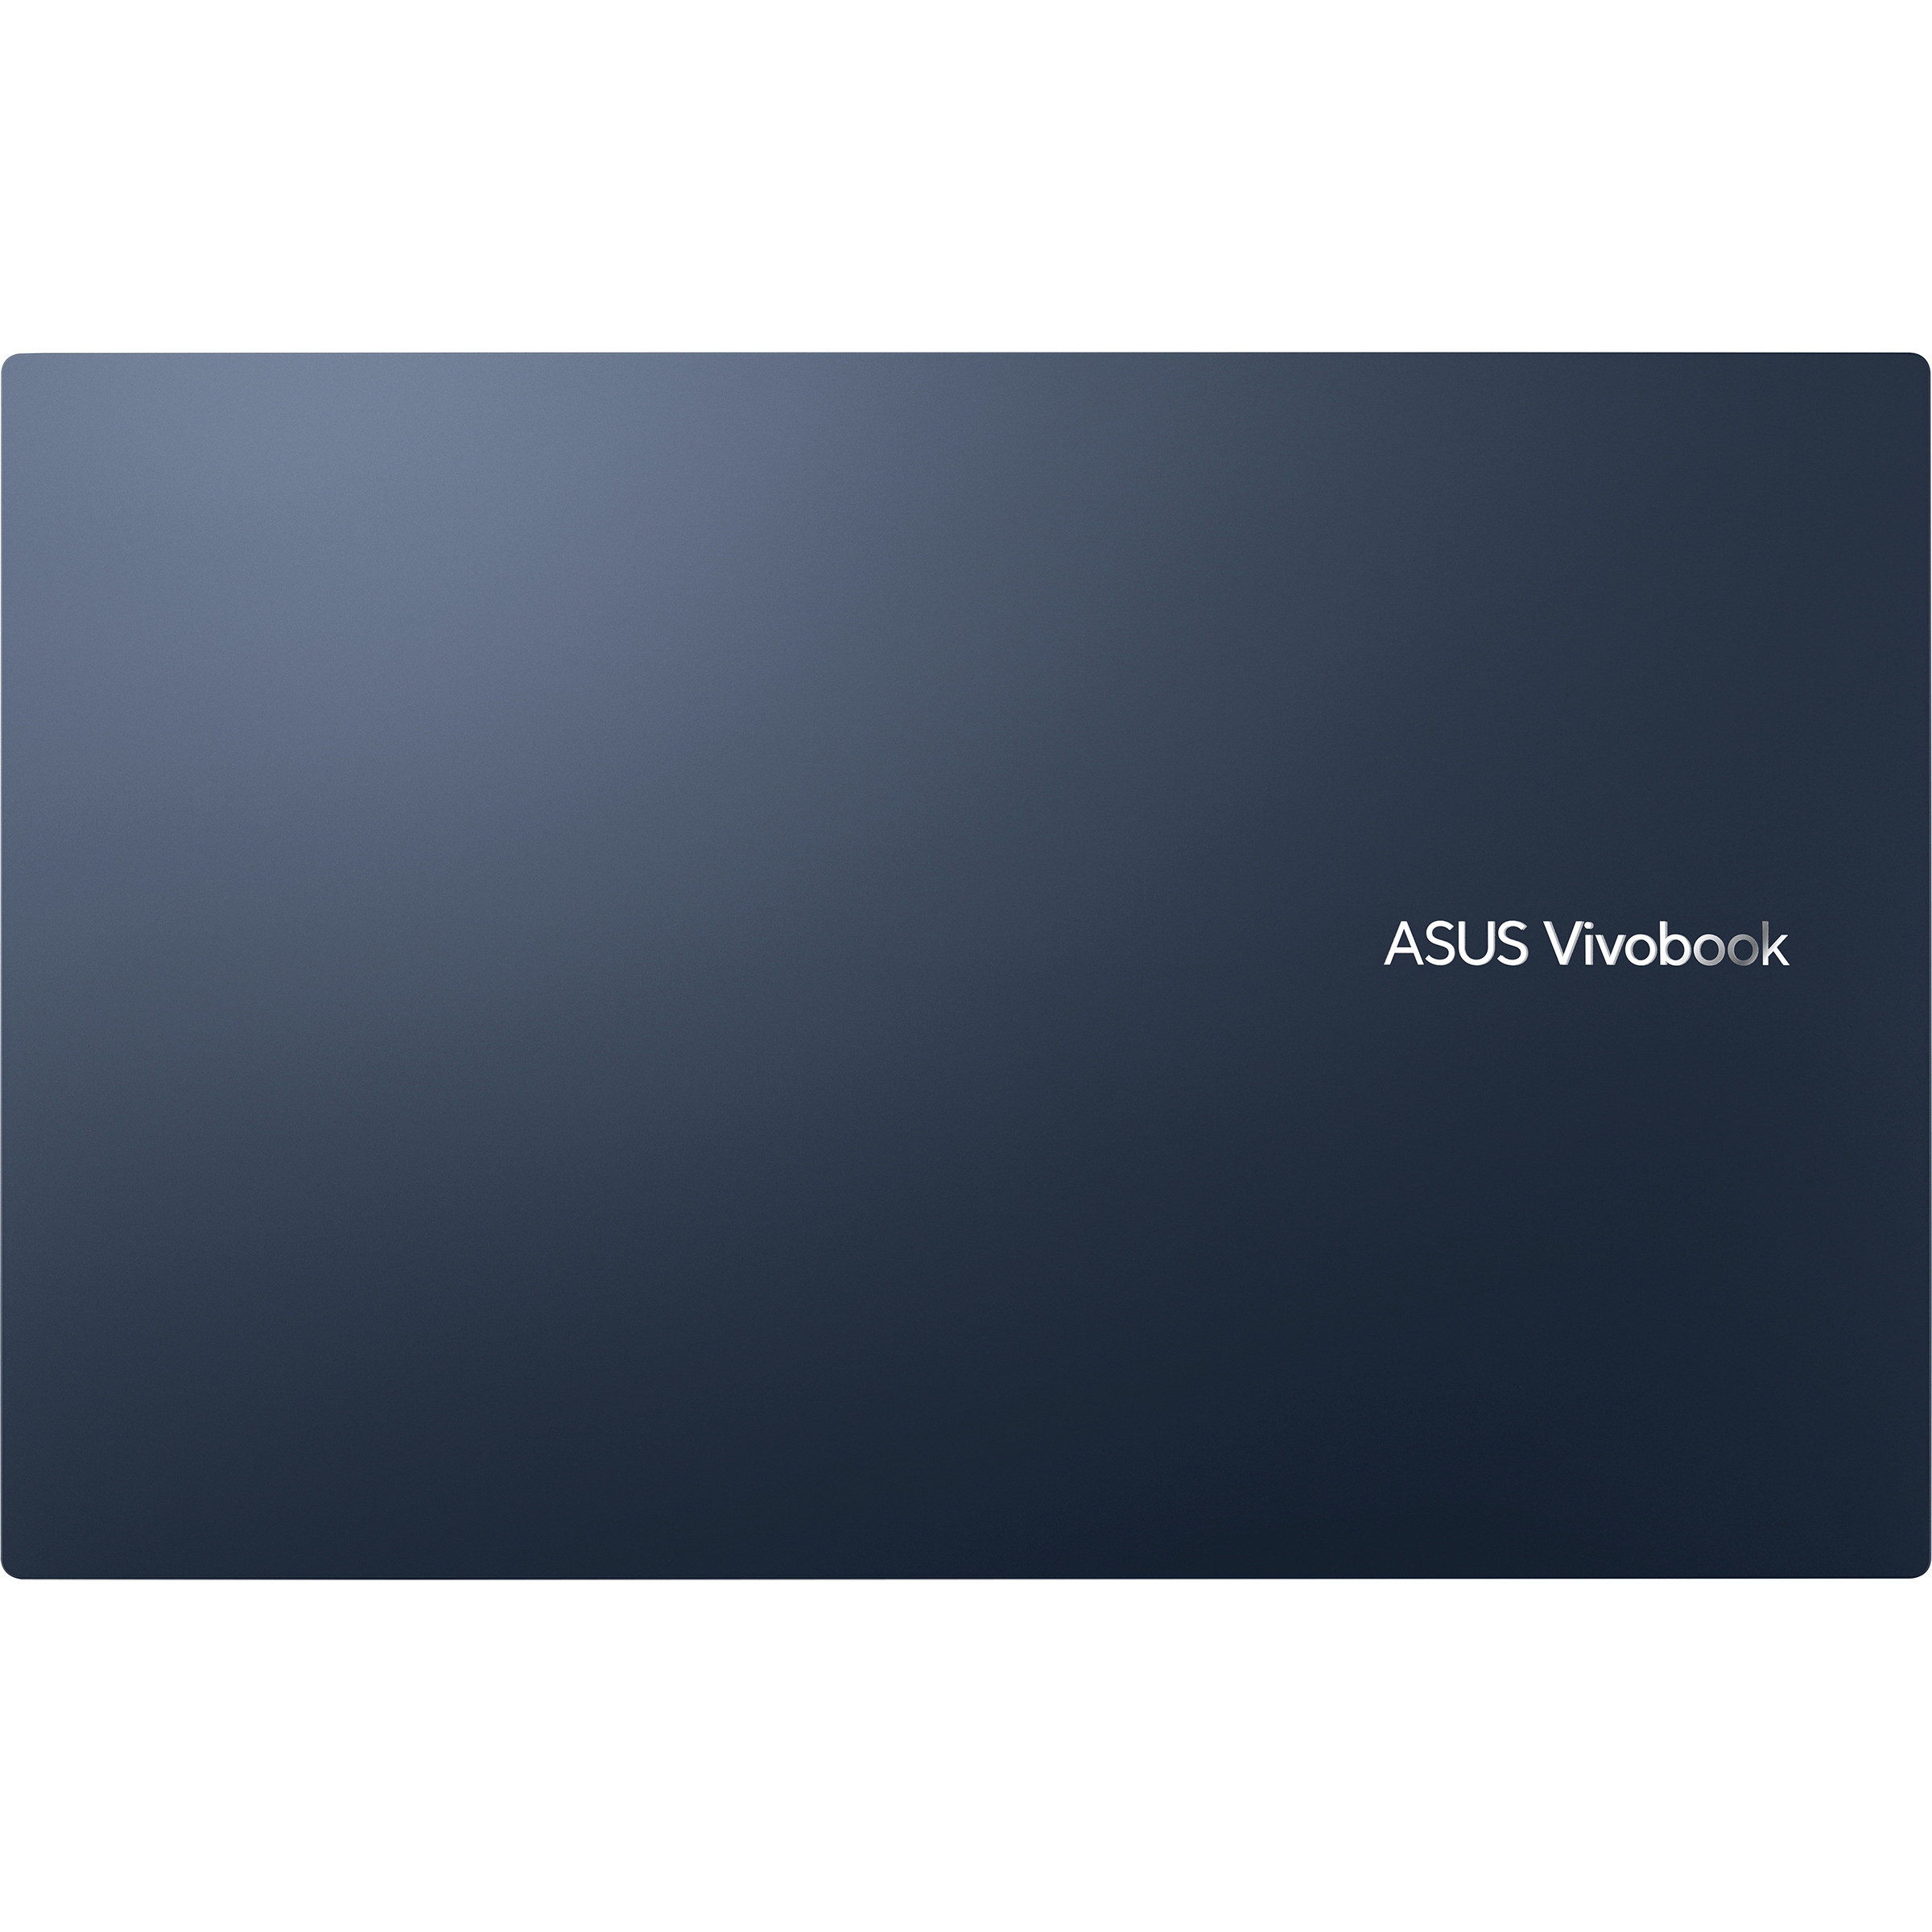 series)｜Laptops Global Vivobook (M1702, 5000 Ryzen 17 AMD For Home｜ASUS